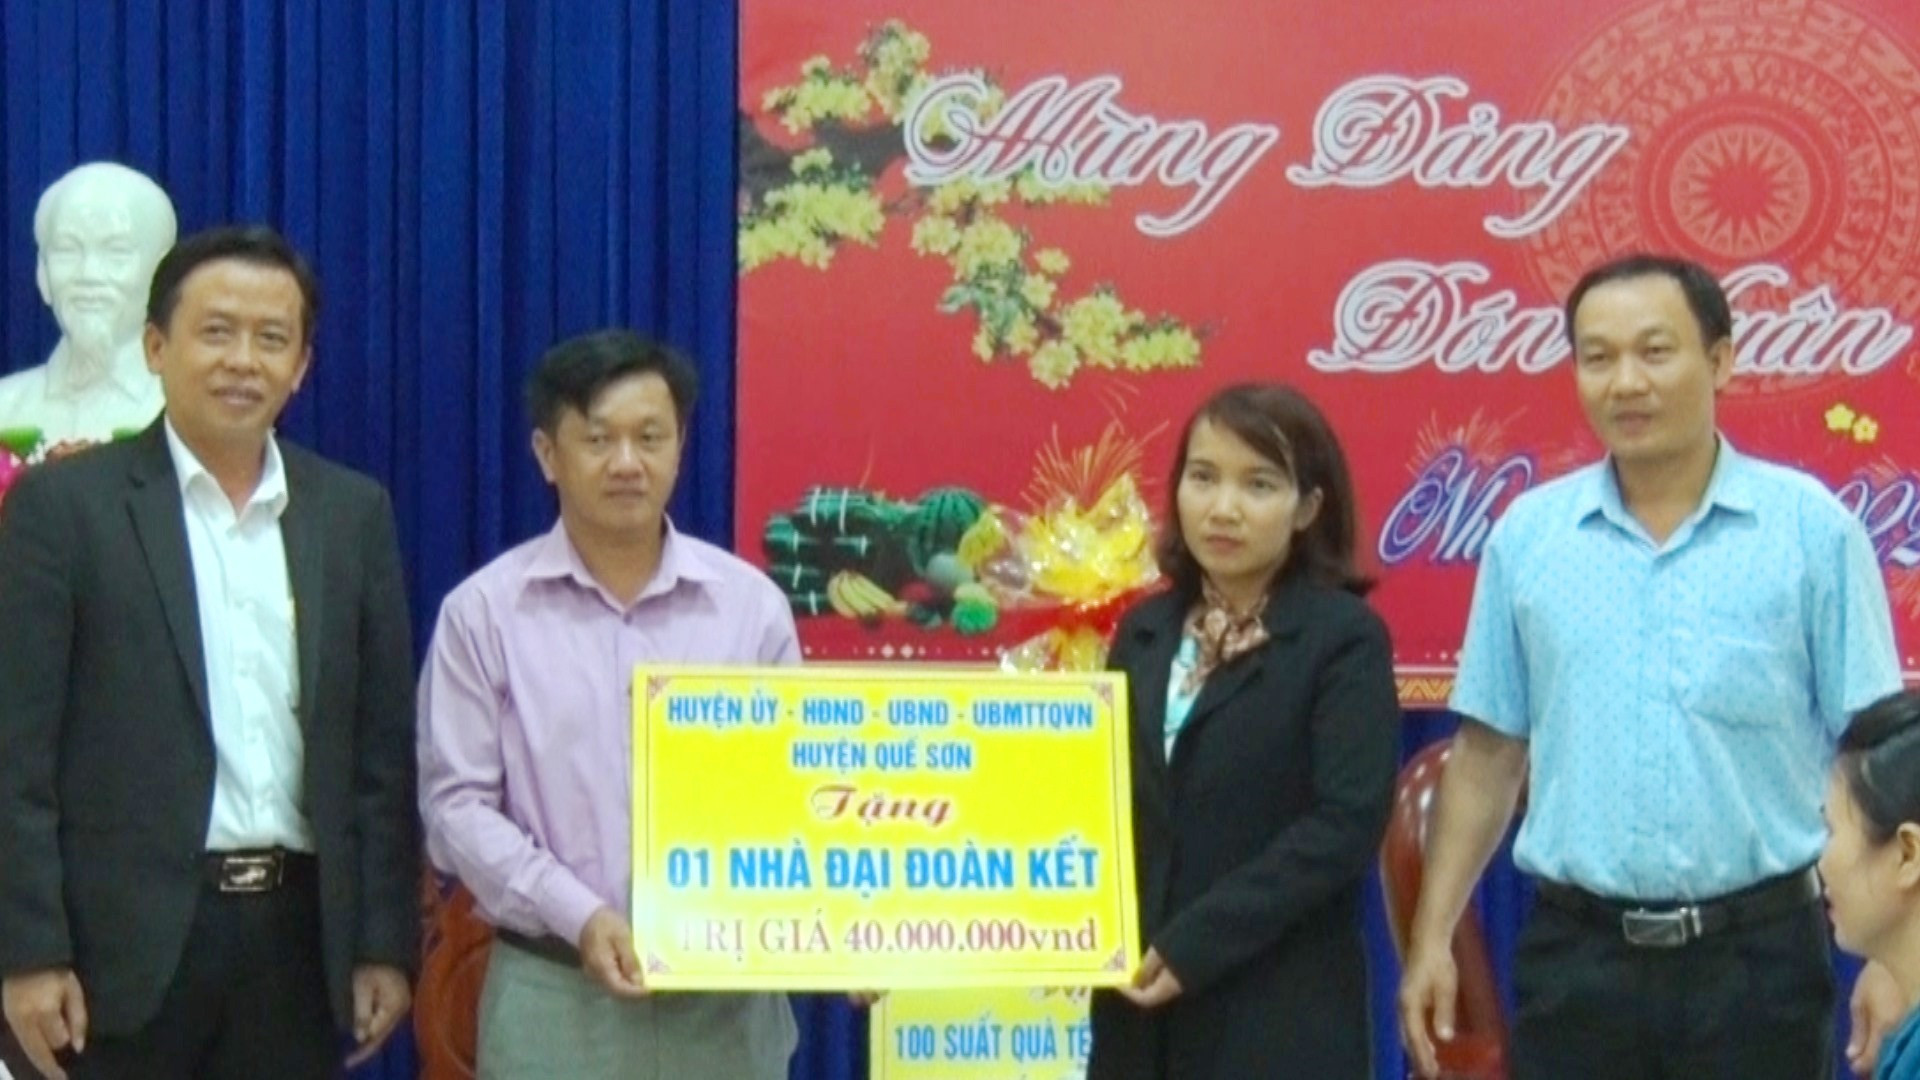 Lãnh đạo huyện Quế Sơn trao tặng nhà đại đoàn kết tại Nông Sơn. Ảnh: T.P